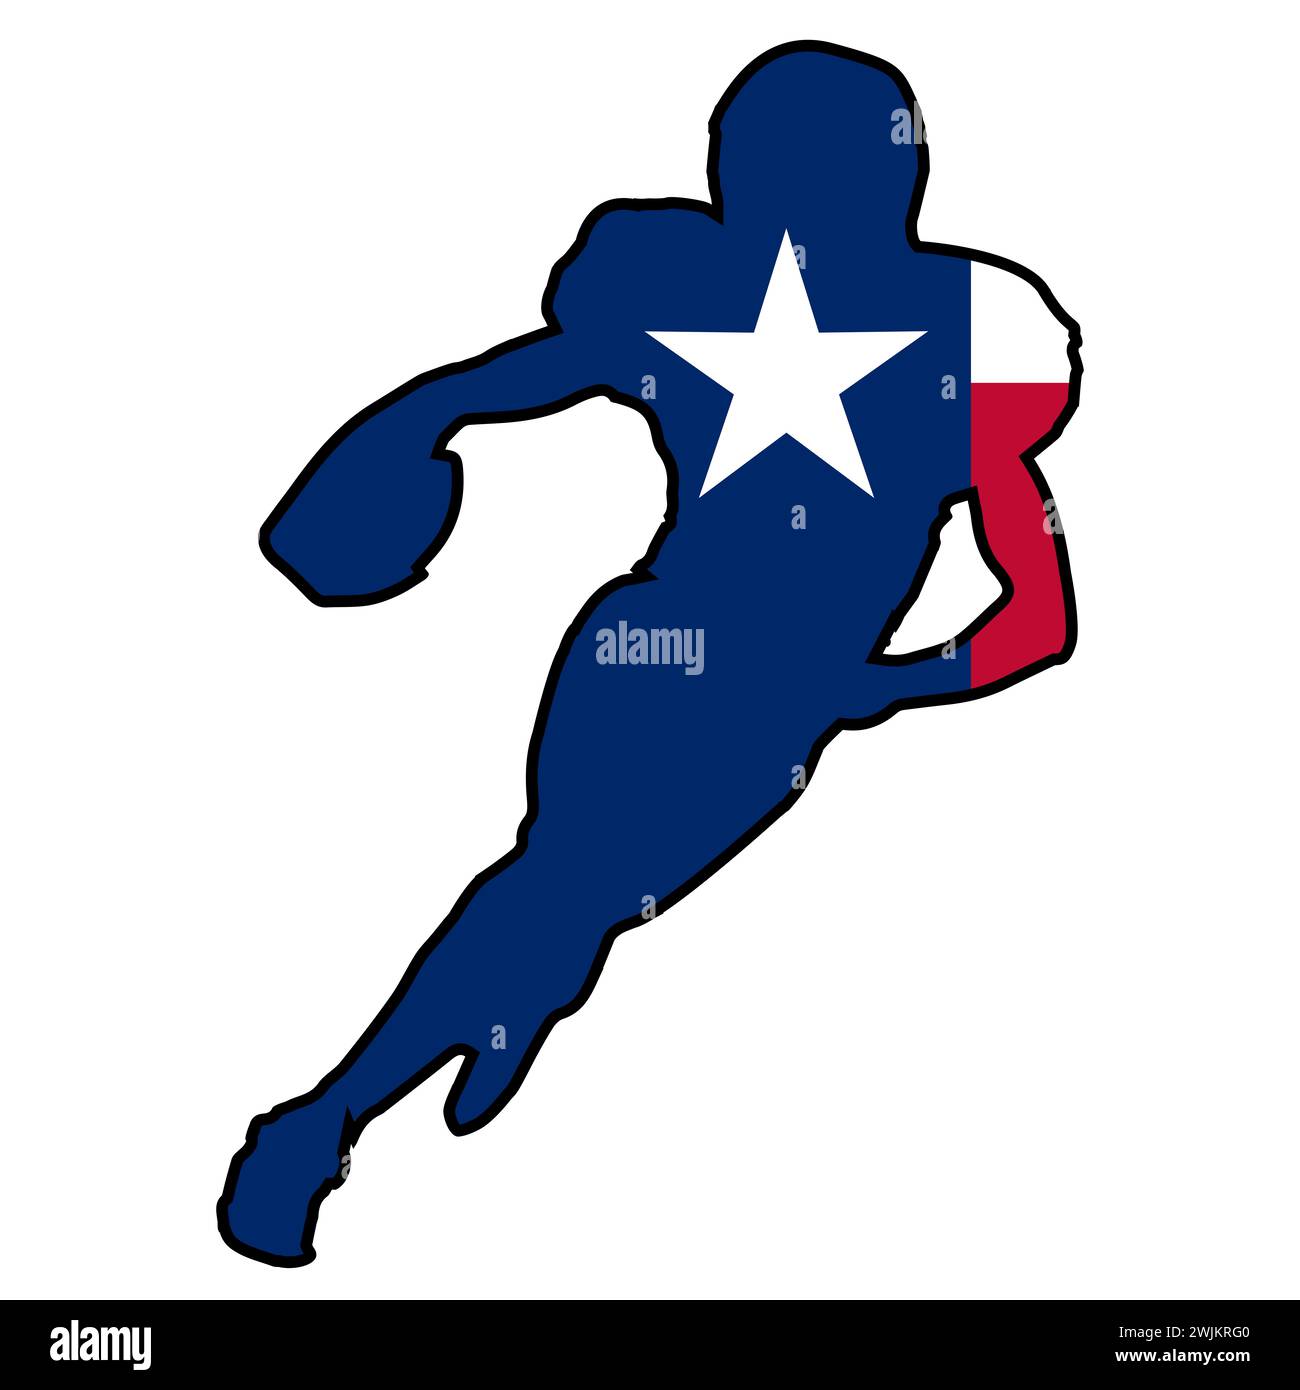 Icône d'étoile du drapeau de l'État du Texas dans la silhouette d'un footballeur américain Banque D'Images